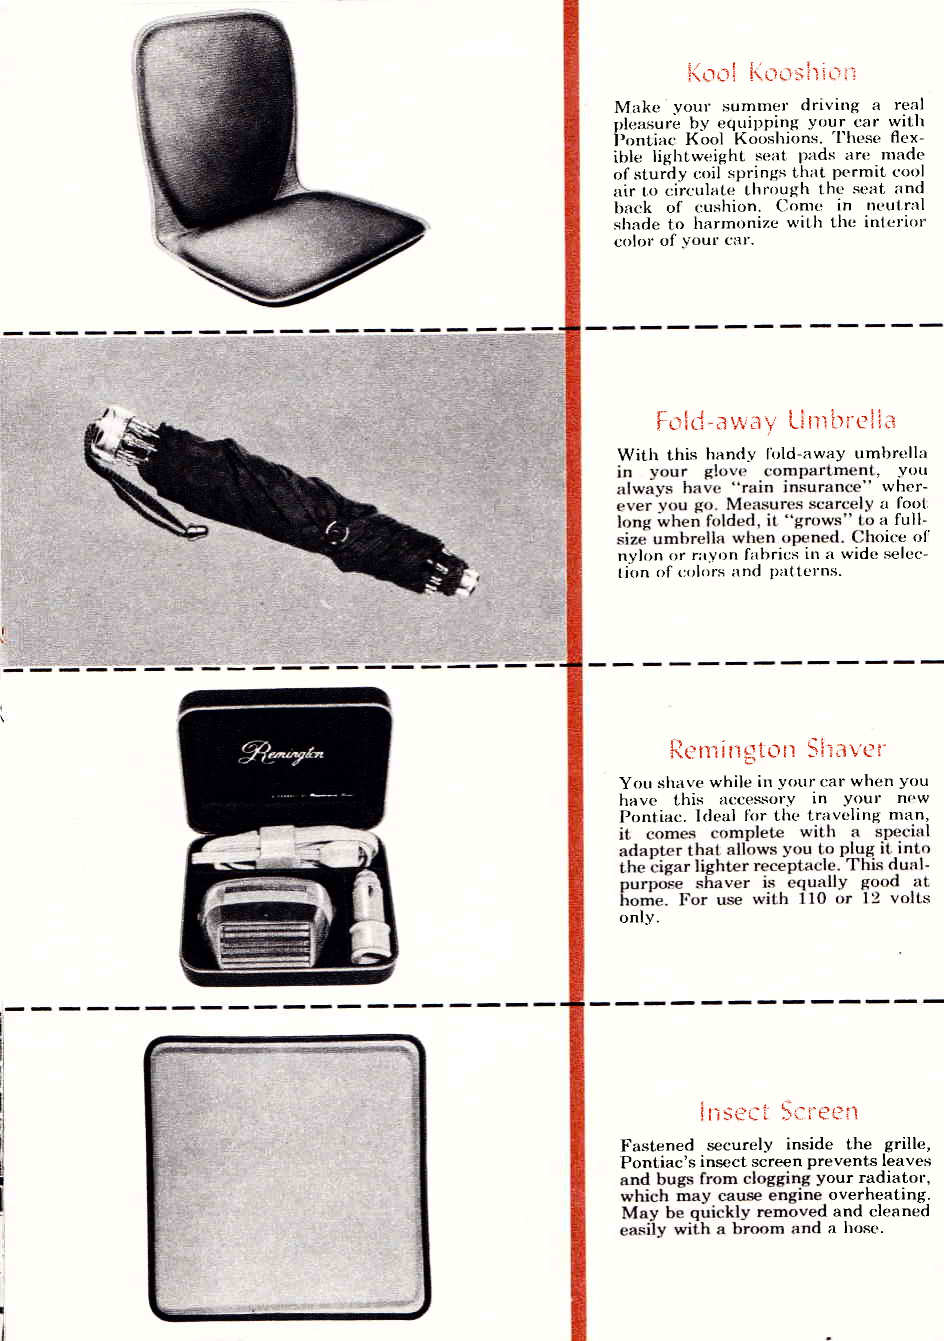 n_1956 Pontiac Accessories-17.jpg